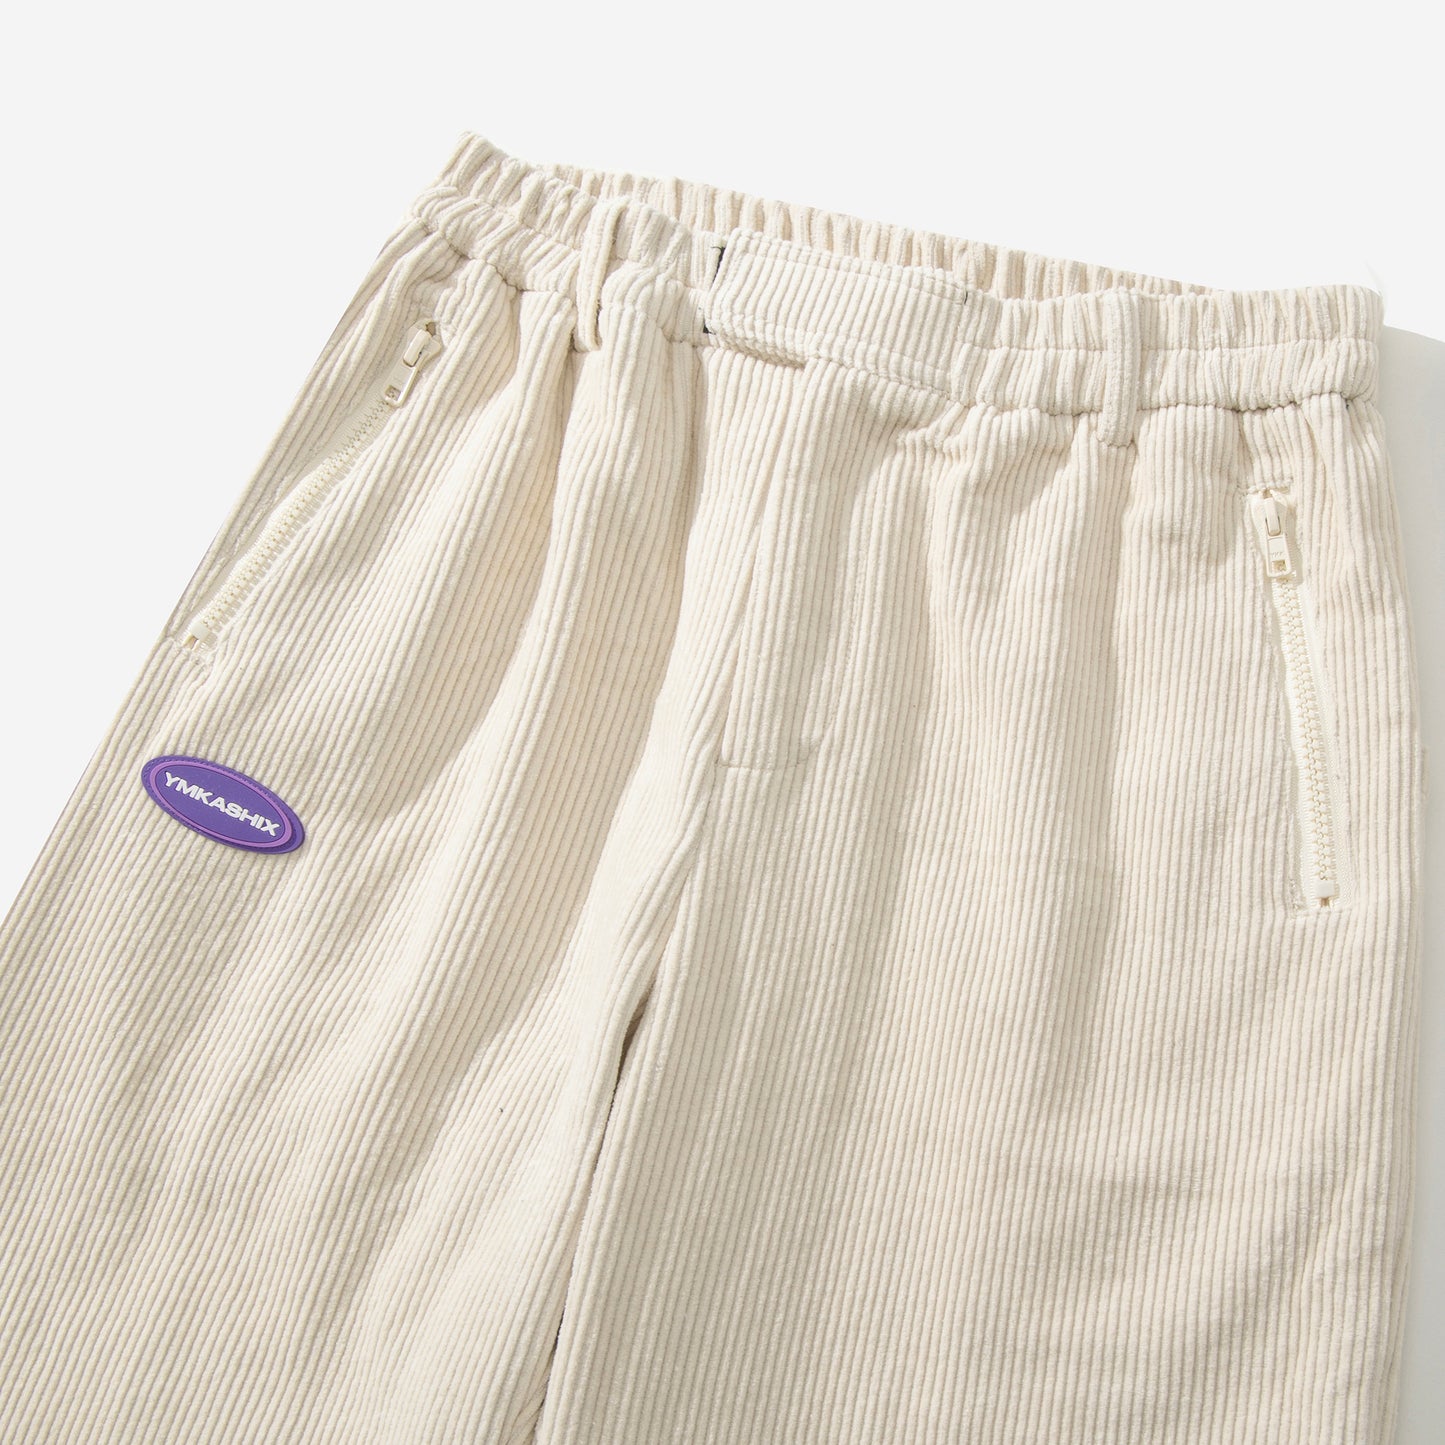 Pants Velvet Series model 4, beige